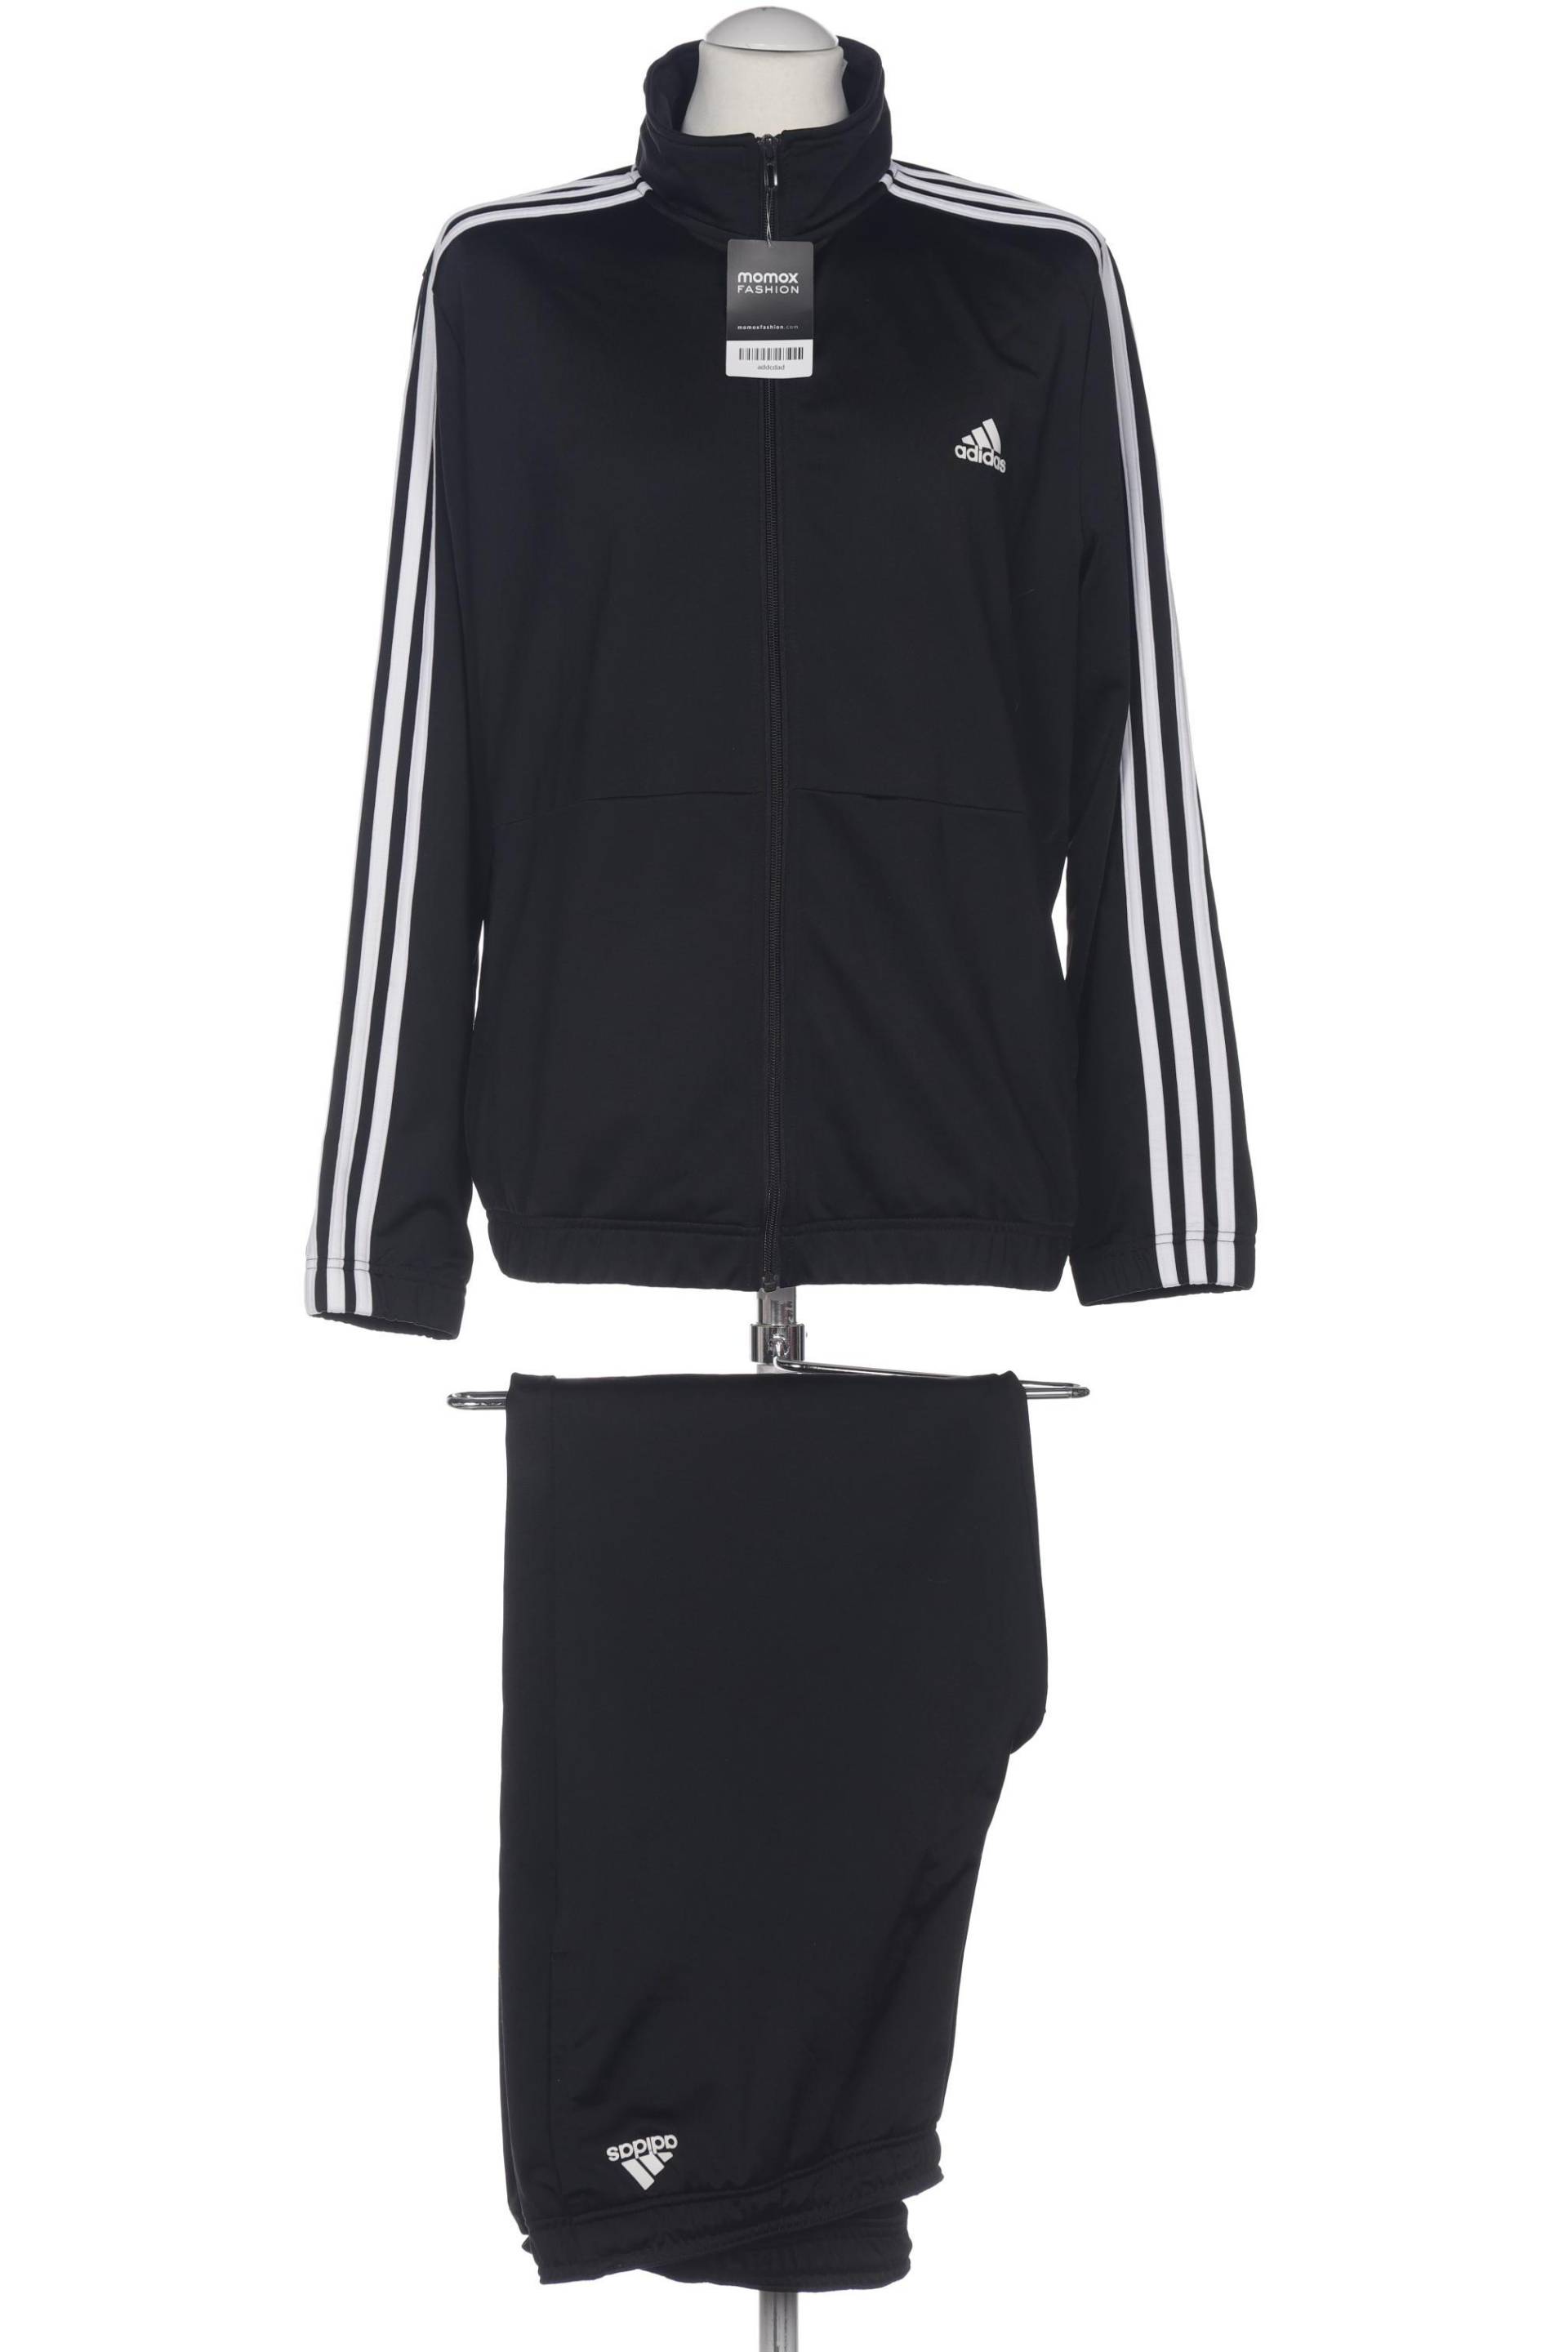 adidas Herren Anzug, schwarz, Gr. 50 von Adidas